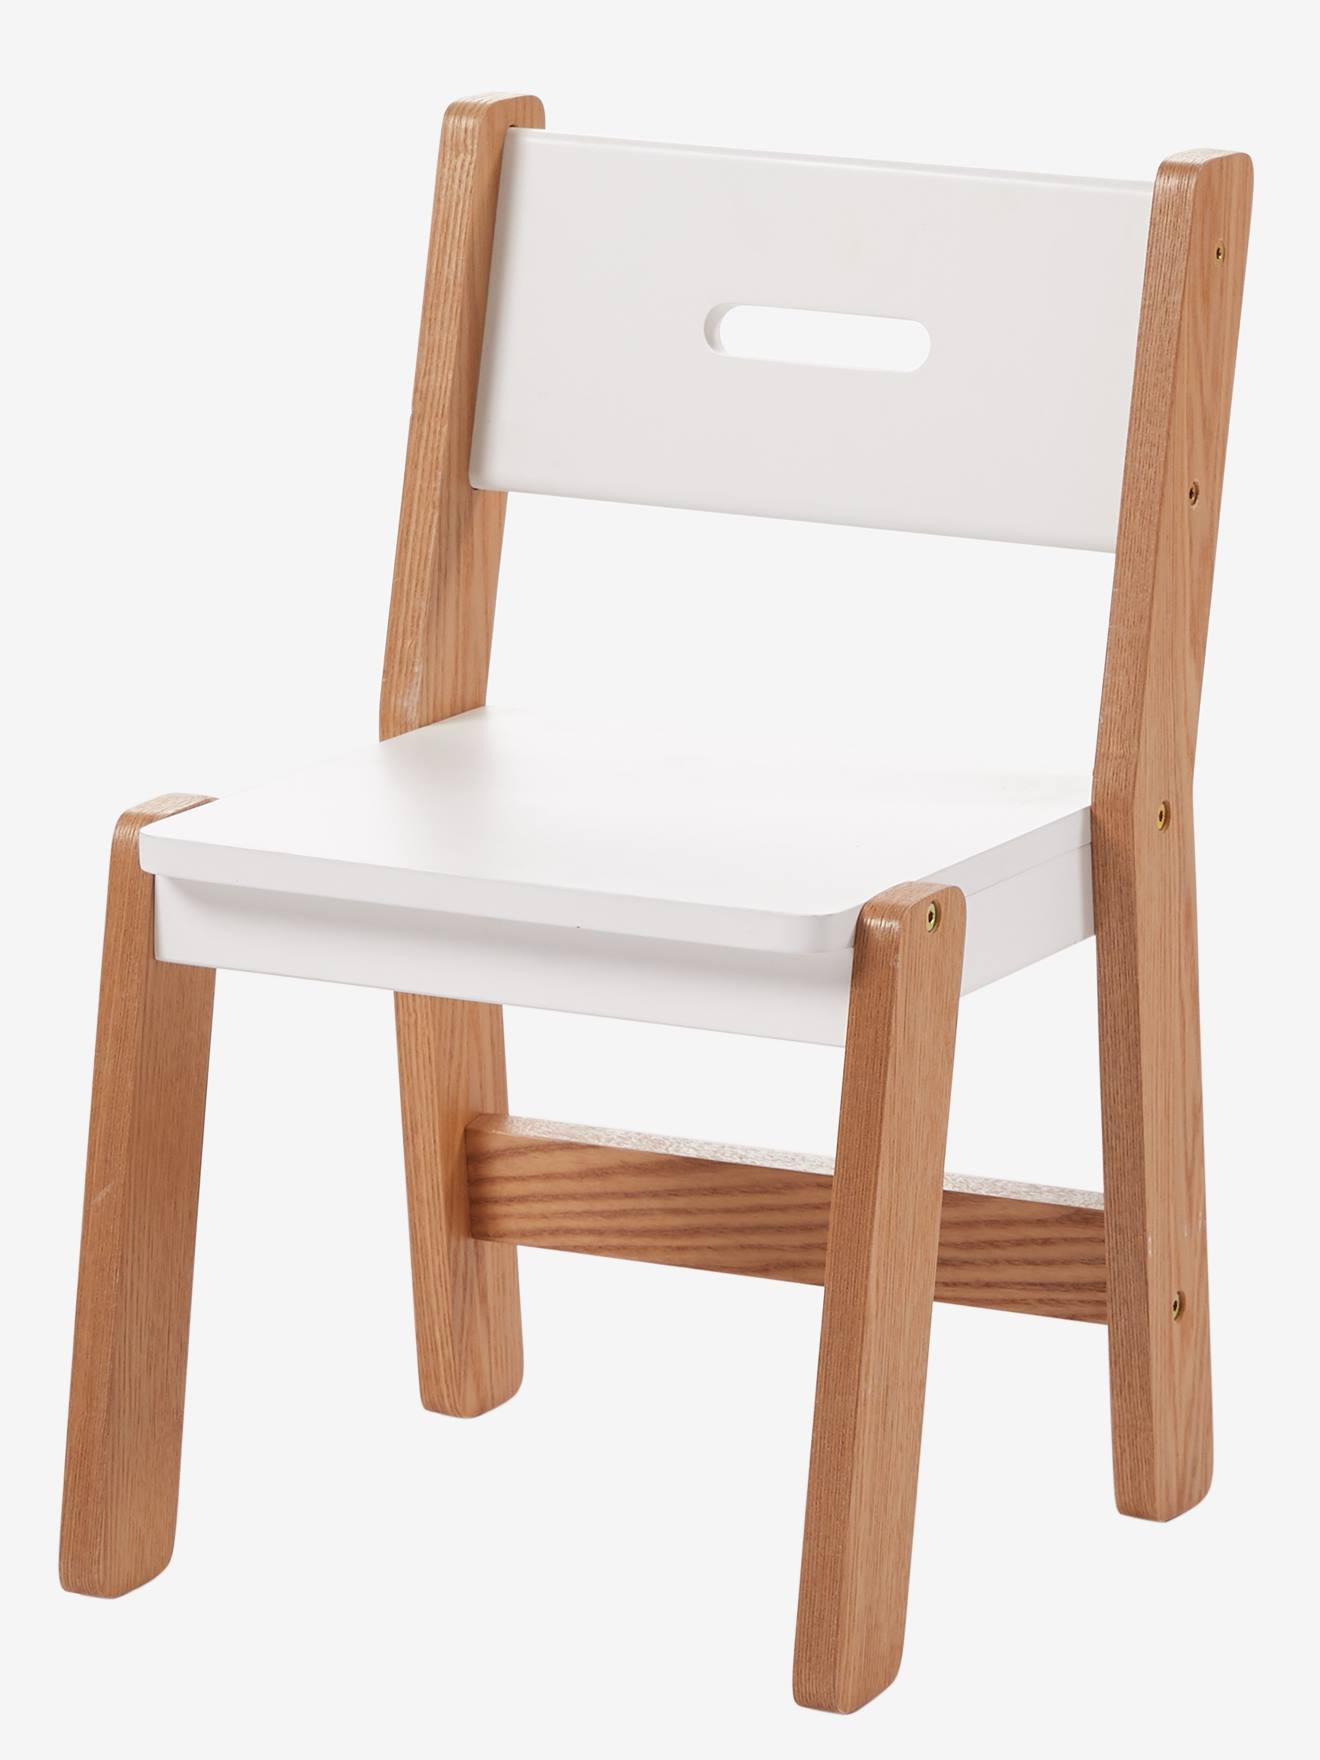 Chaise maternelle, assise 30 cm LIGNE ARCHITEKT blanc/bois